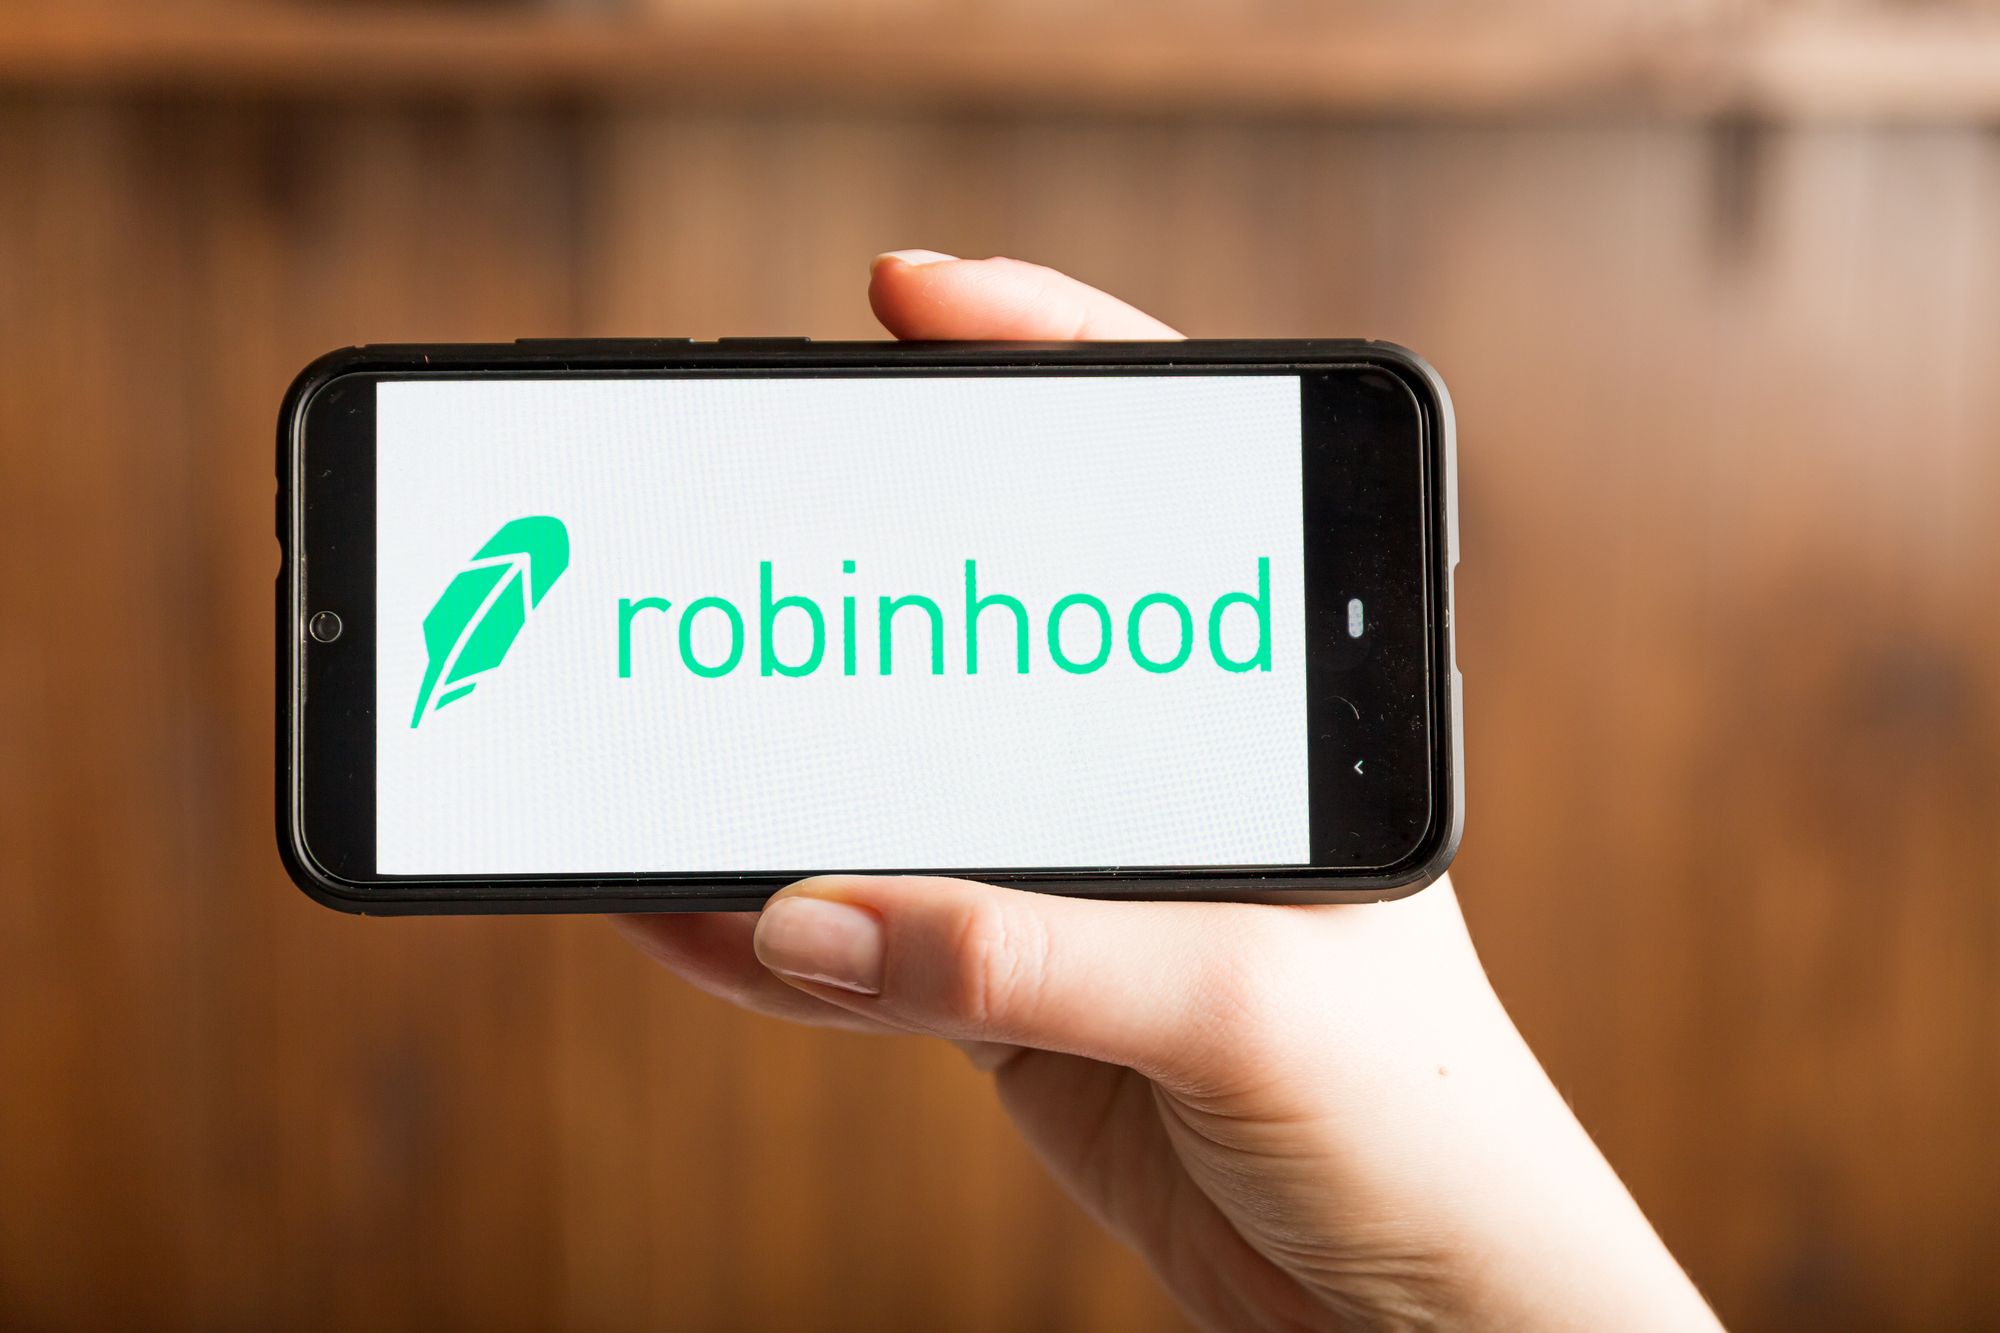 Robinhood app on phone